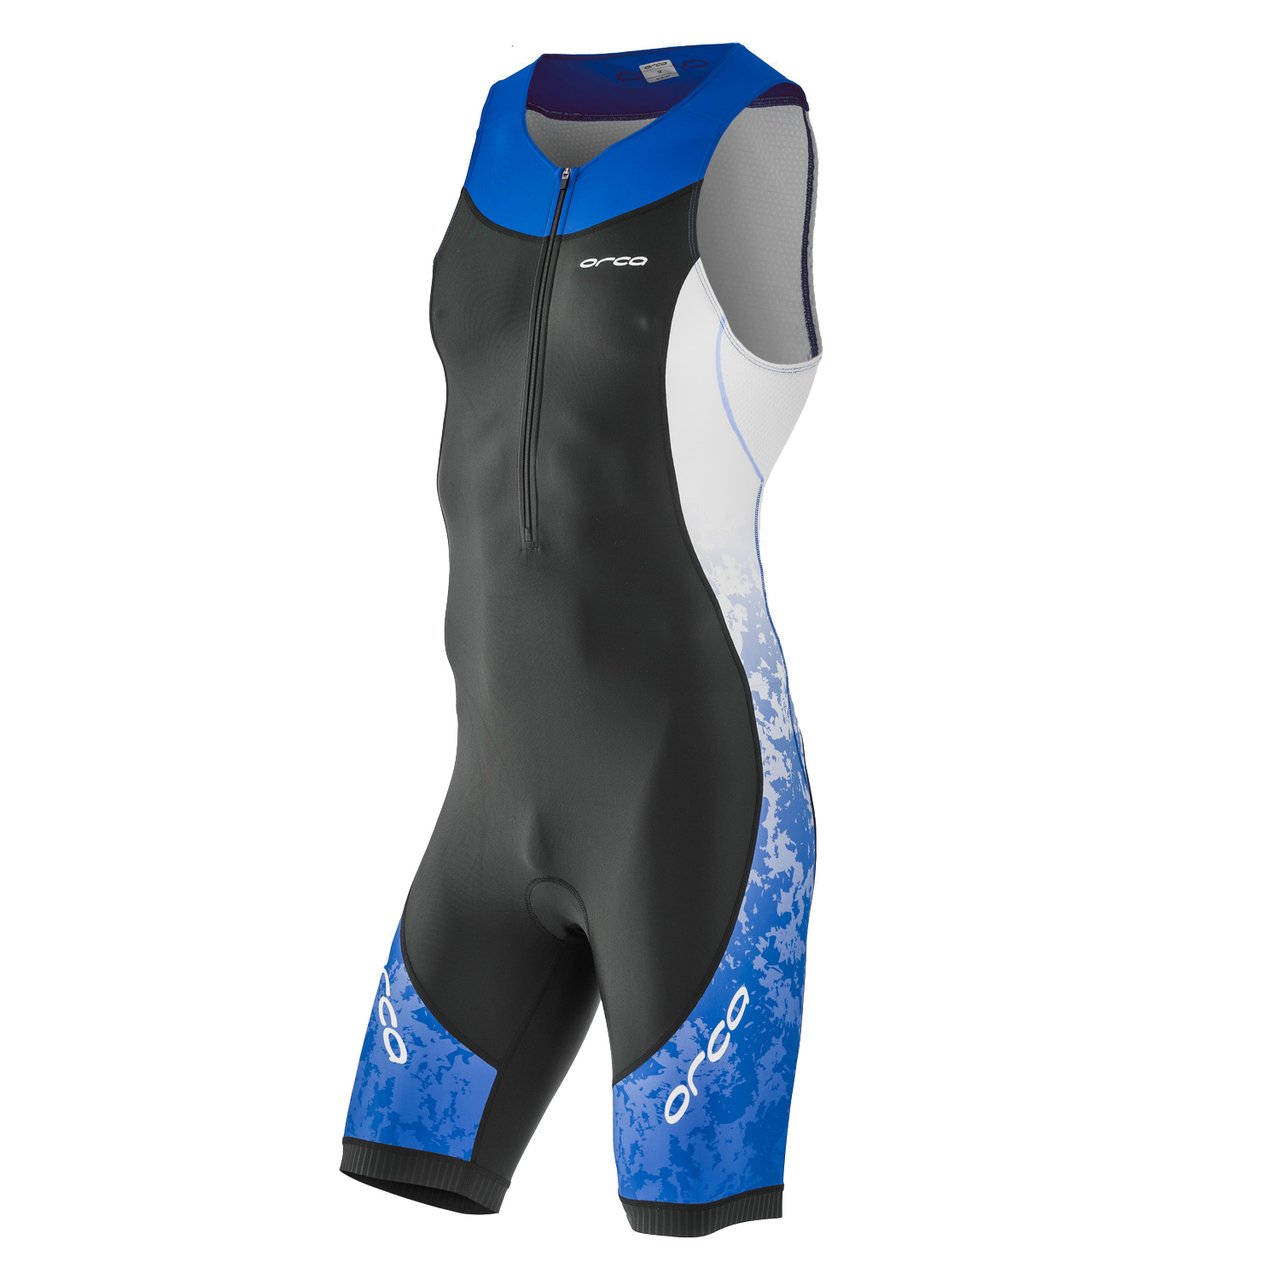 Комбинезон для триатлона Orca Core Race suit, 2018, M, черный/синий, HVC0, размер M